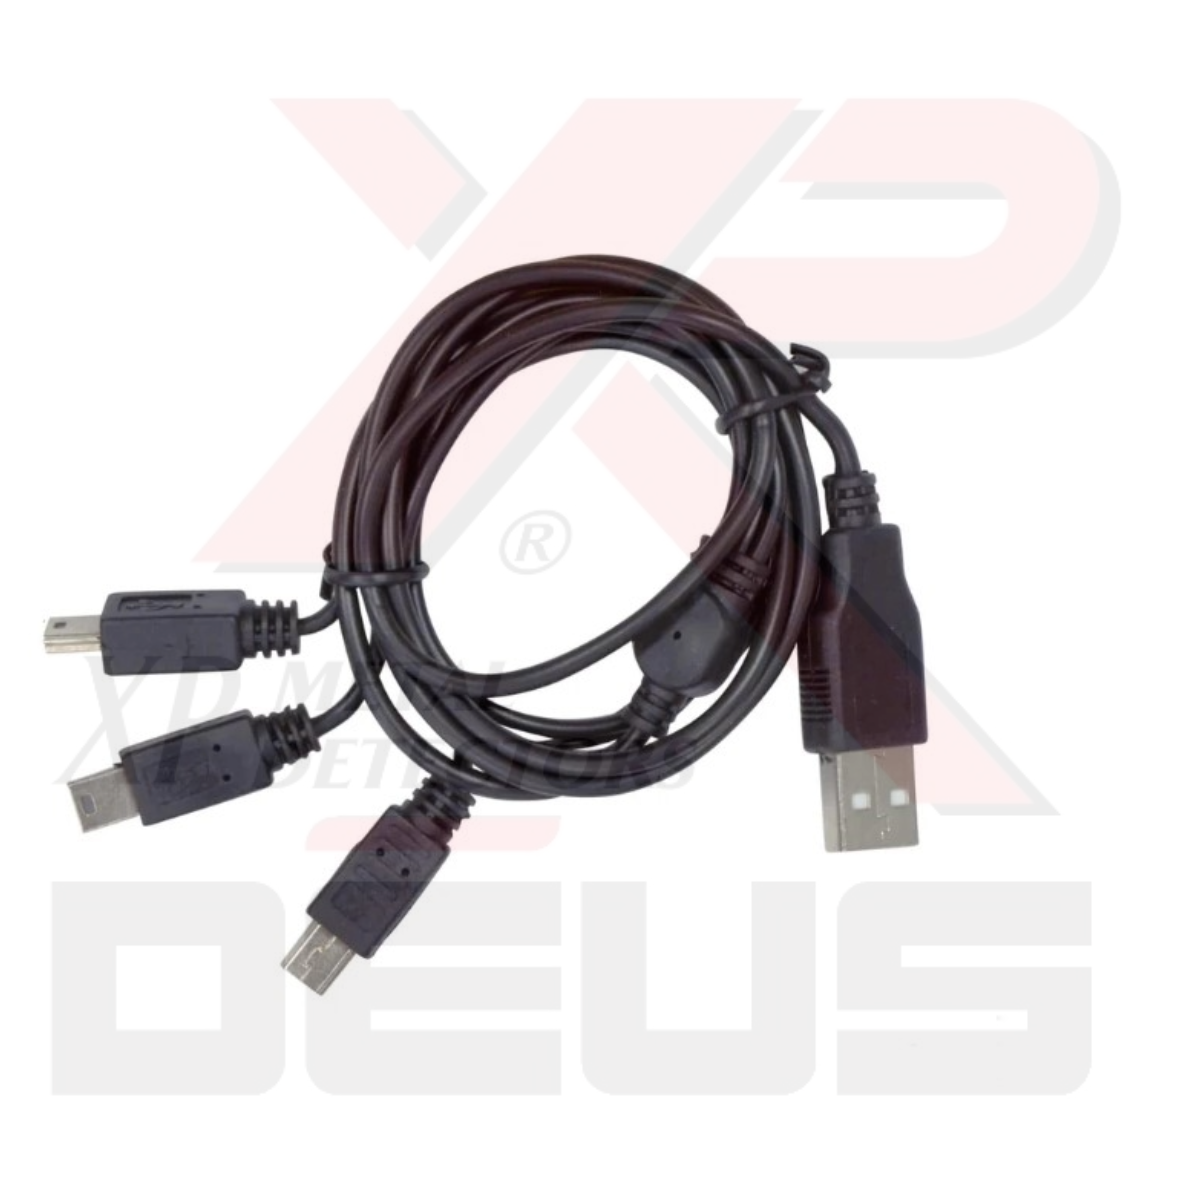 XP Deus OBX USB Charger